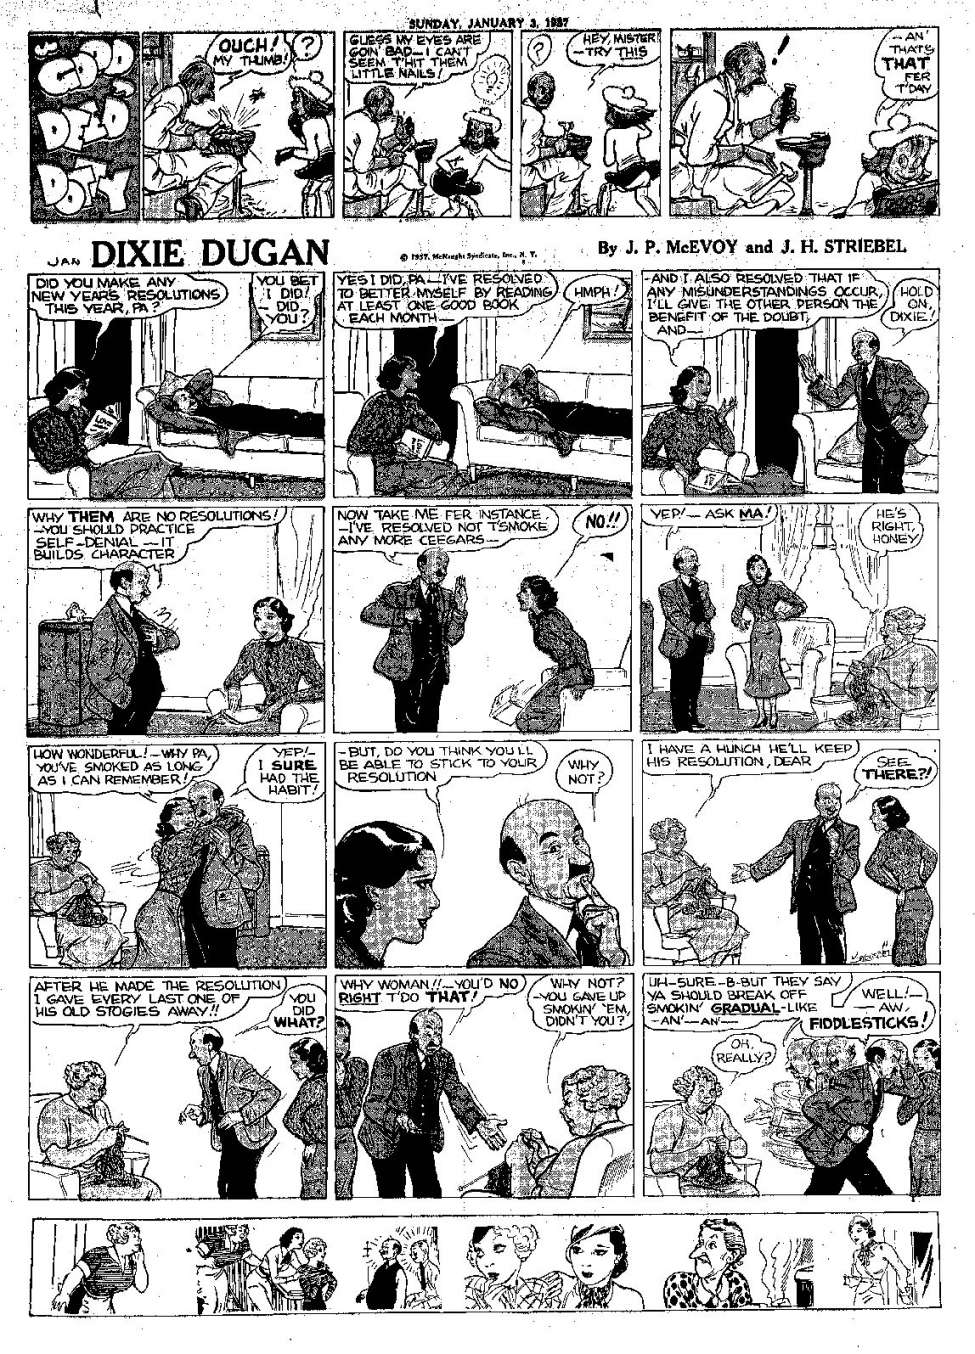 Book Cover For Dixie Dugan 1937 - Sundays